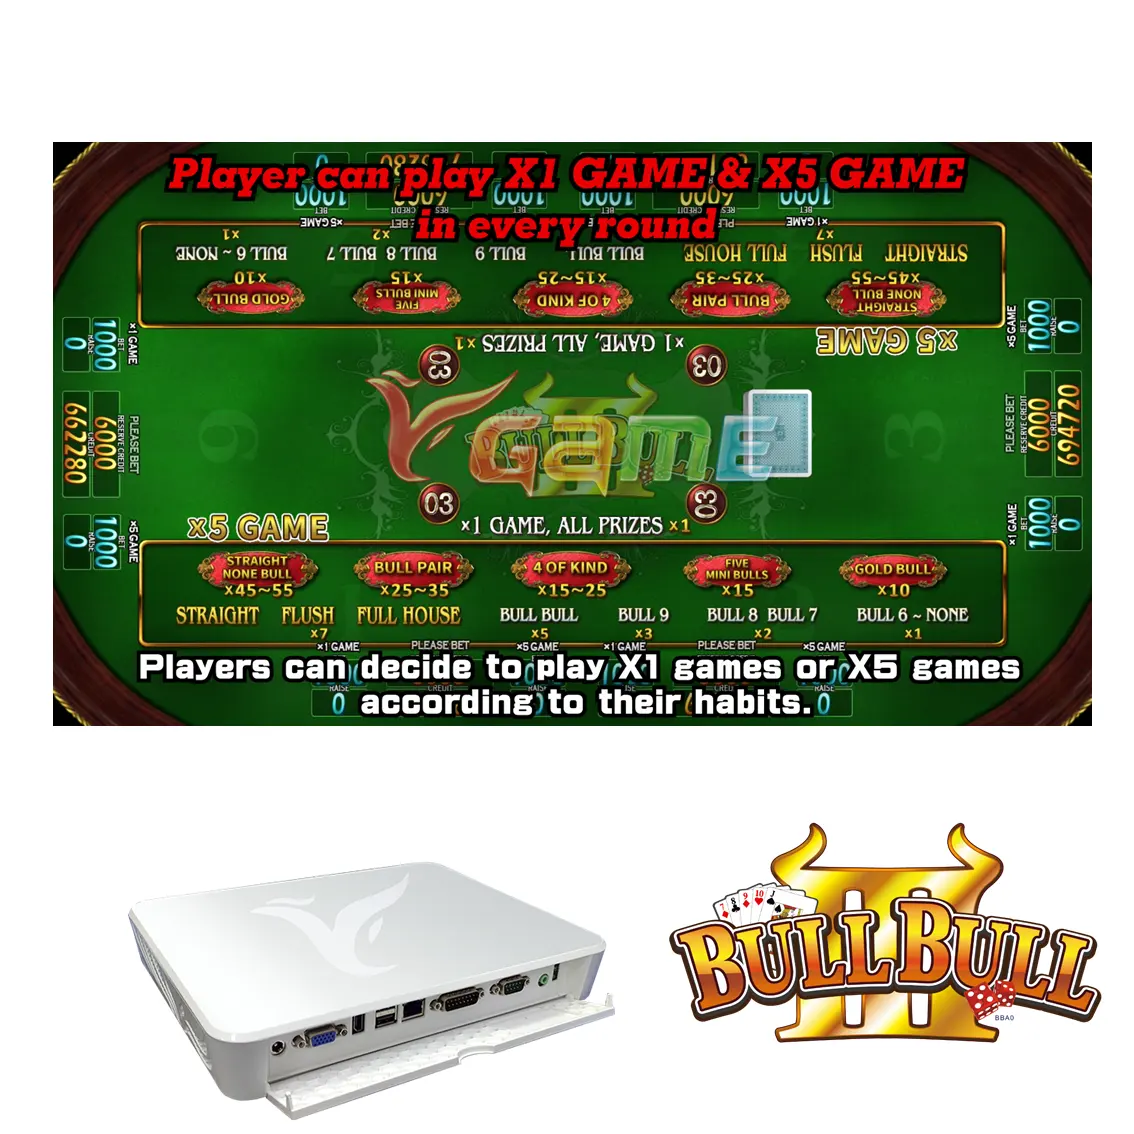 VGAME PCB Board Bullfight Niu Niu Software para Venda Jogo de cartas